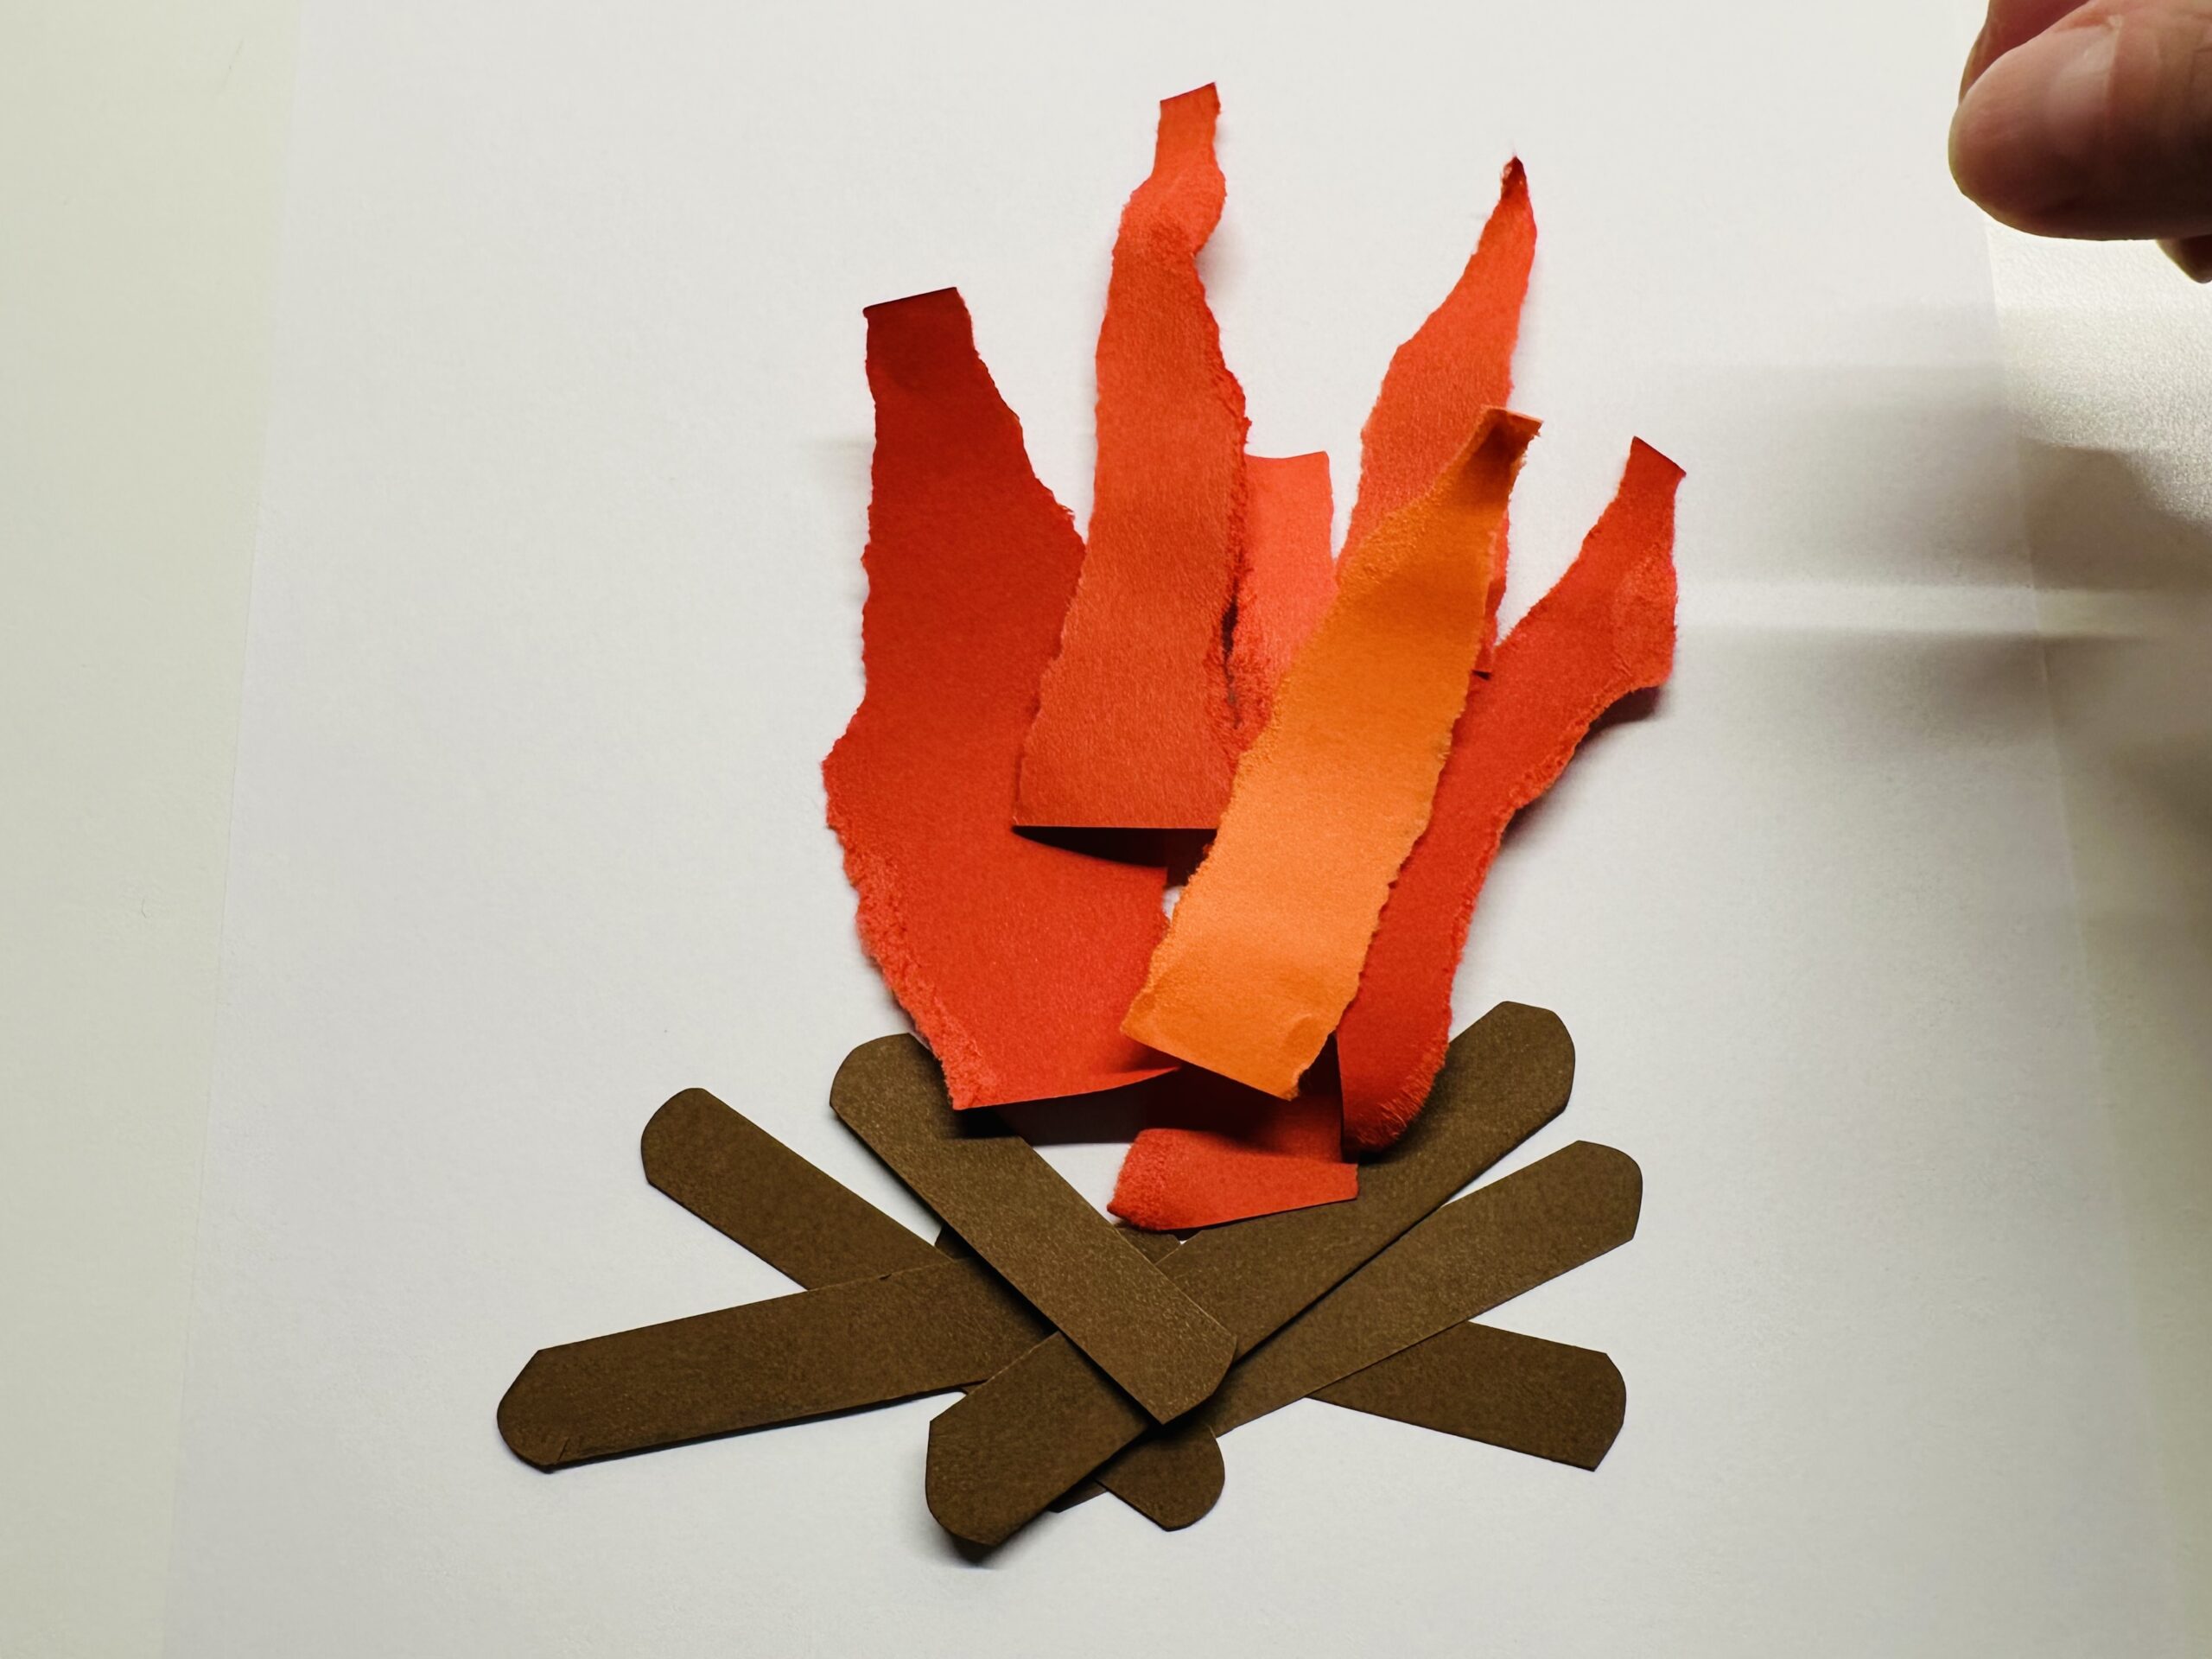 Bild zum Schritt 12 für das Bastel- und DIY-Abenteuer für Kinder: 'Legt auf die roten Flammen ein paar orangefarbene Flammen.'